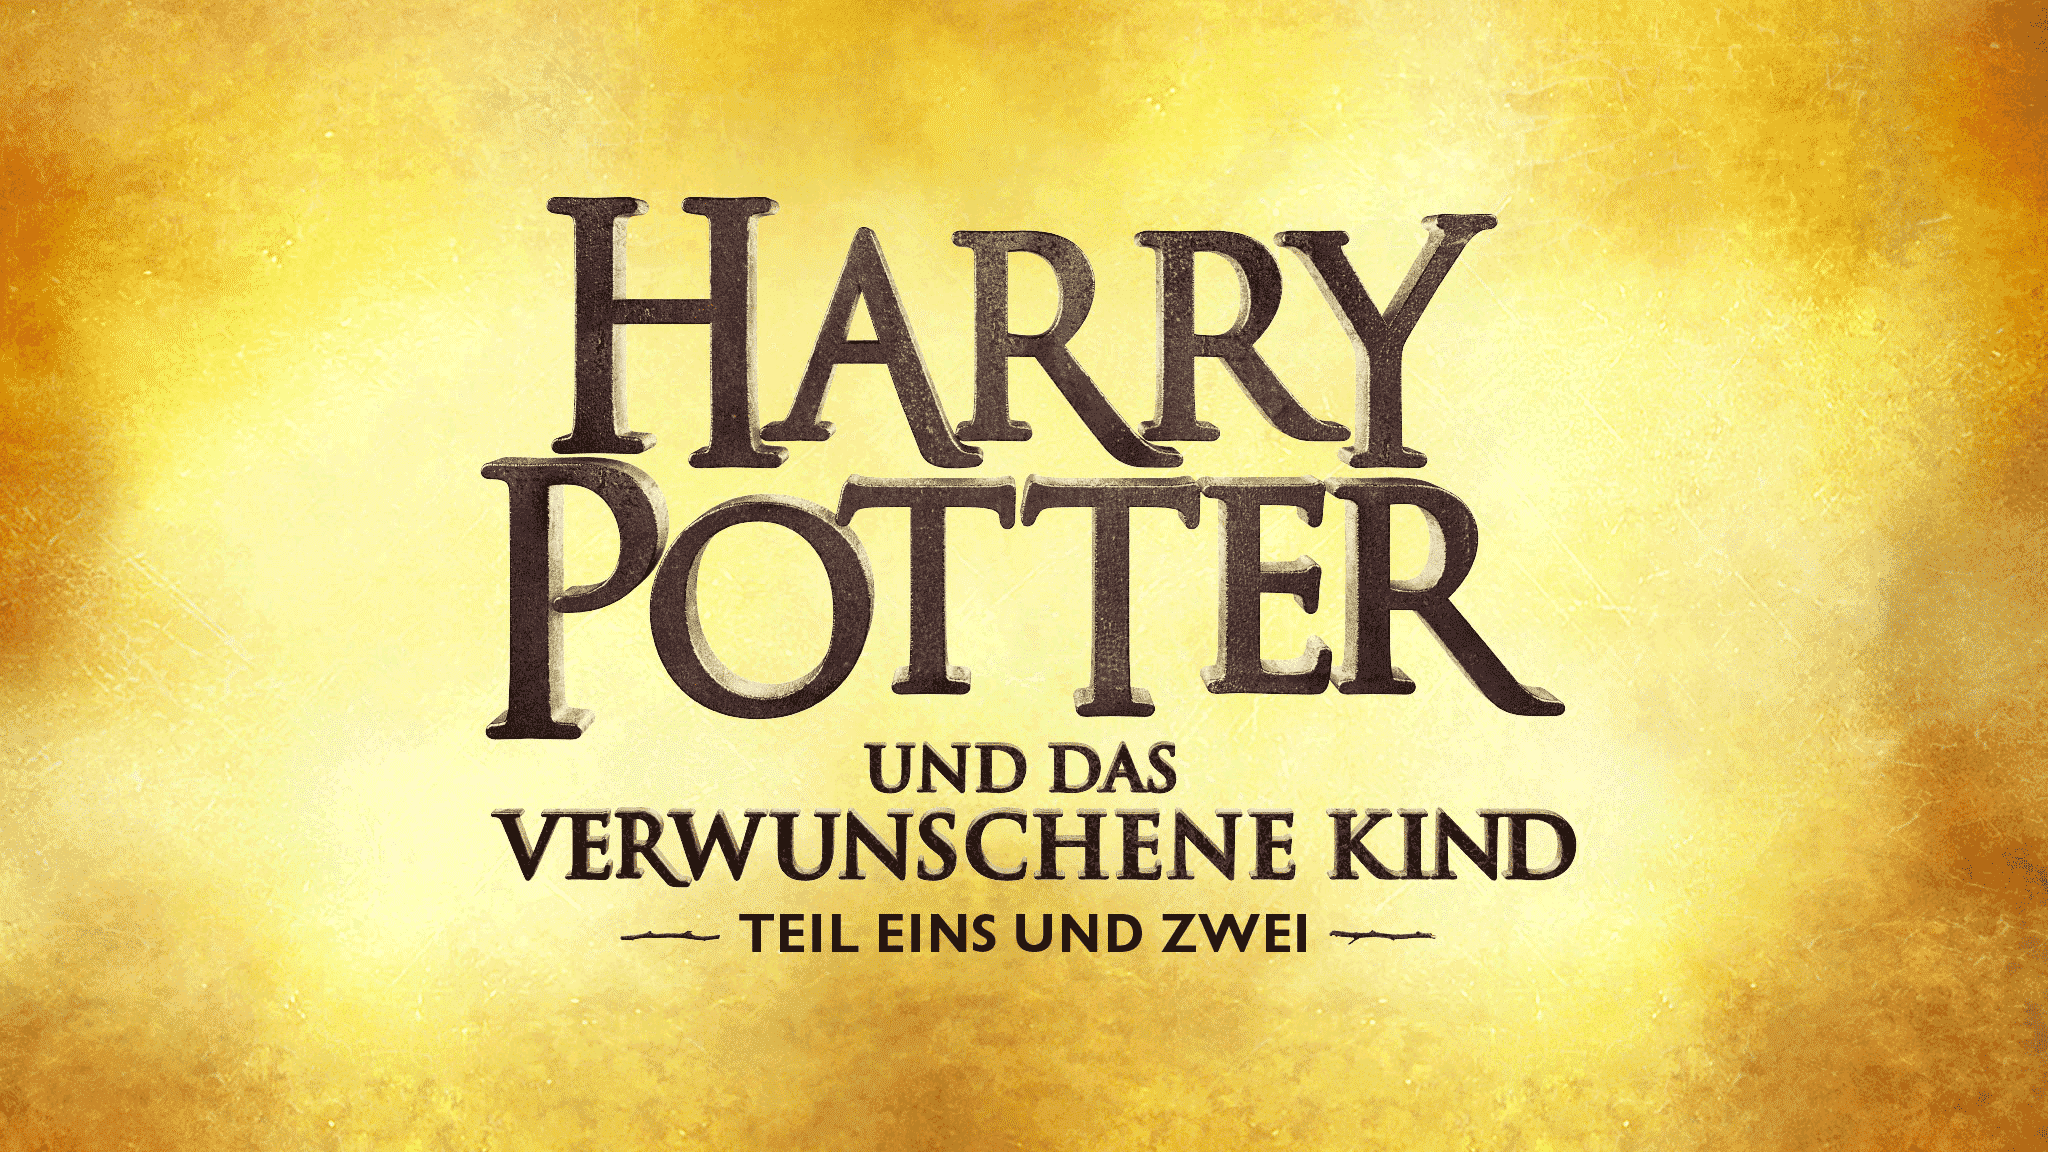 Vorverkauf Und Ticket Infos Zum Harry Potter Theaterstuck 2021 In Hamburg Update Zur Verlegung Ticketmaster De Blog